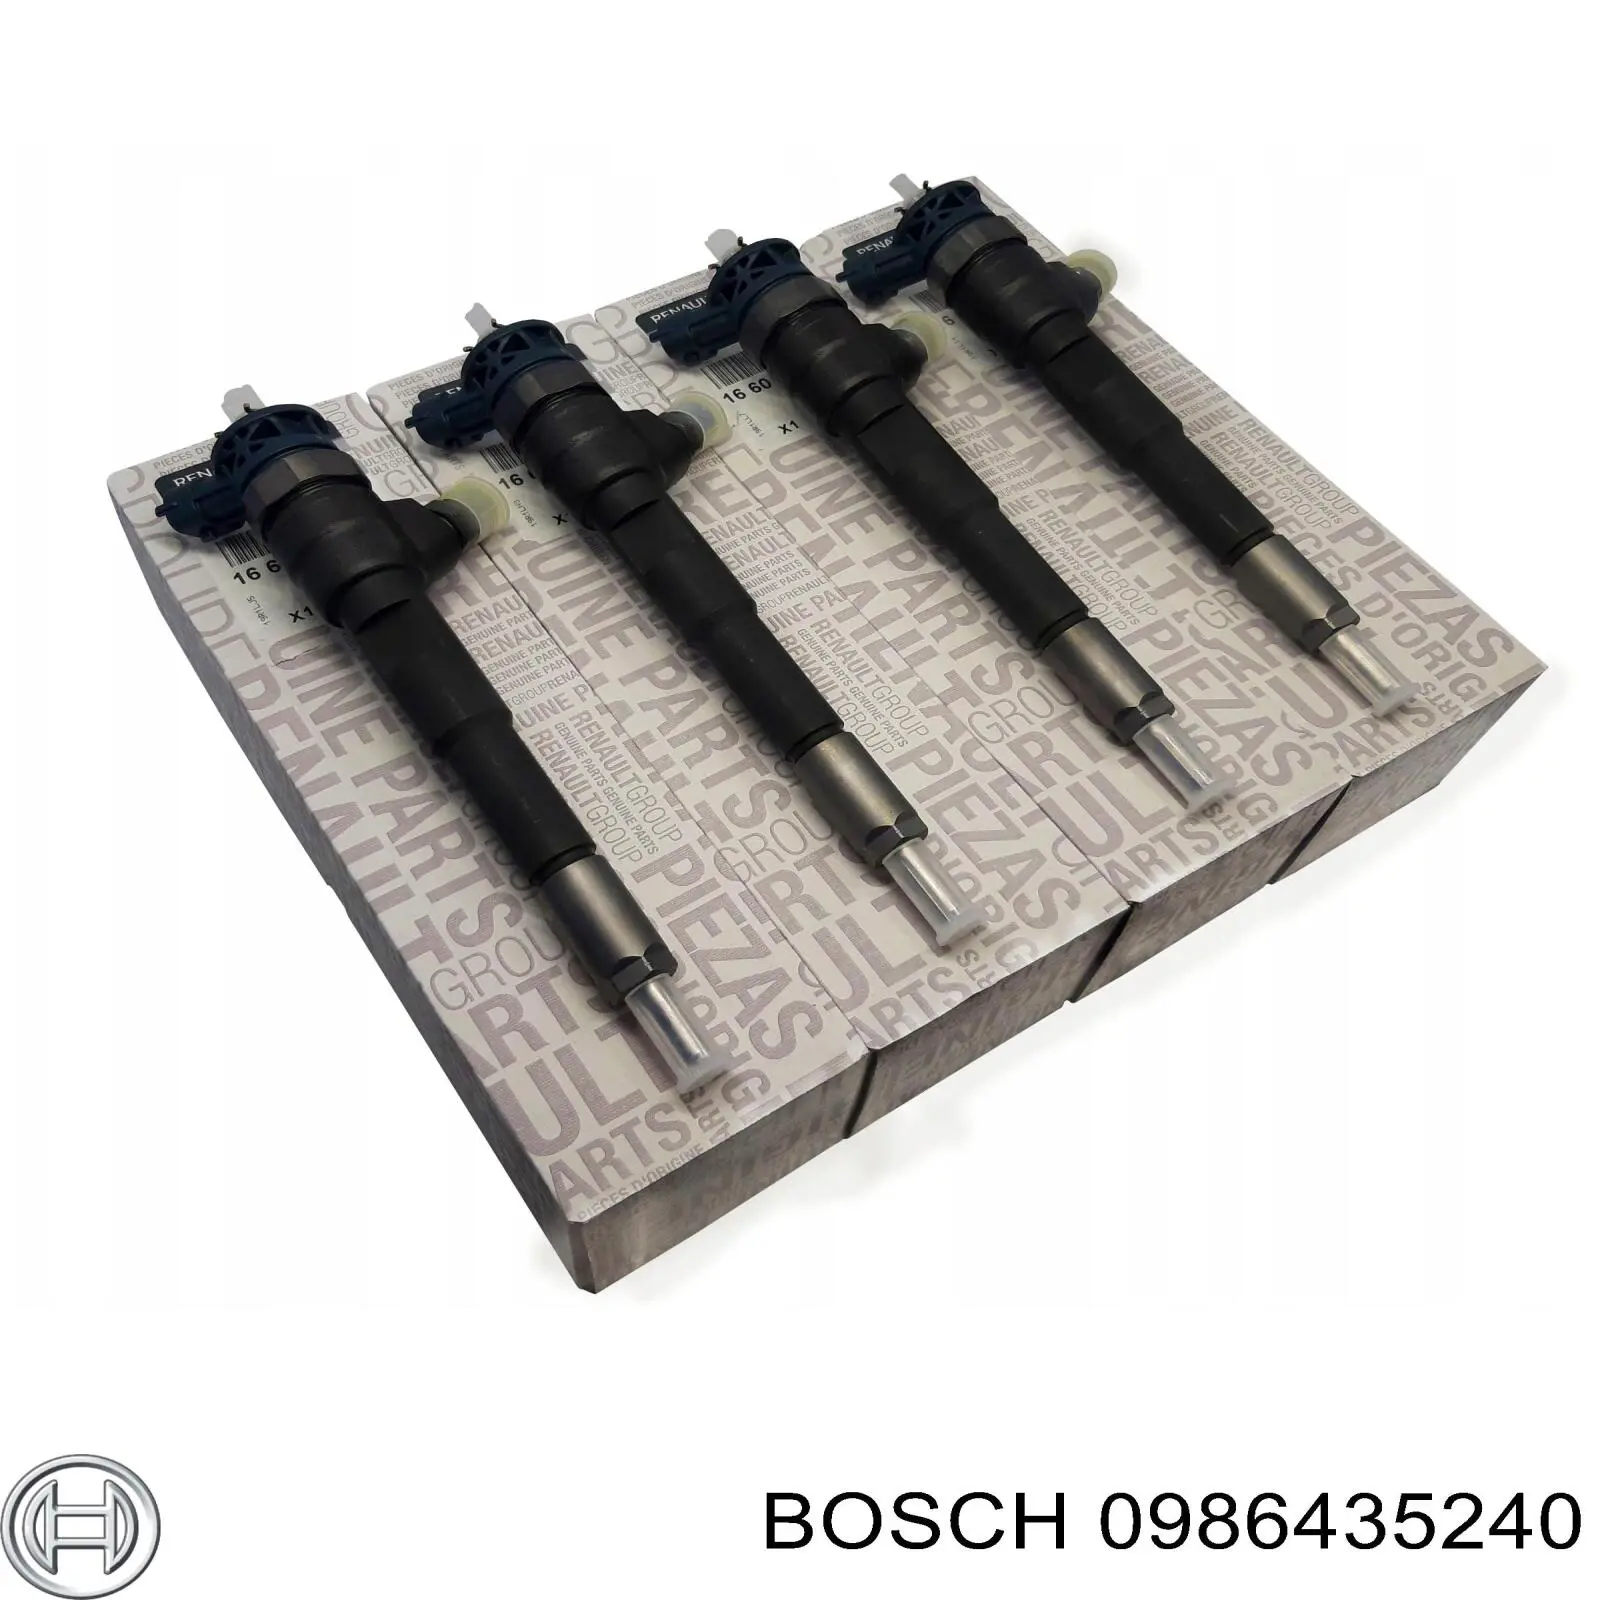 0986435240 Bosch injetor de injeção de combustível